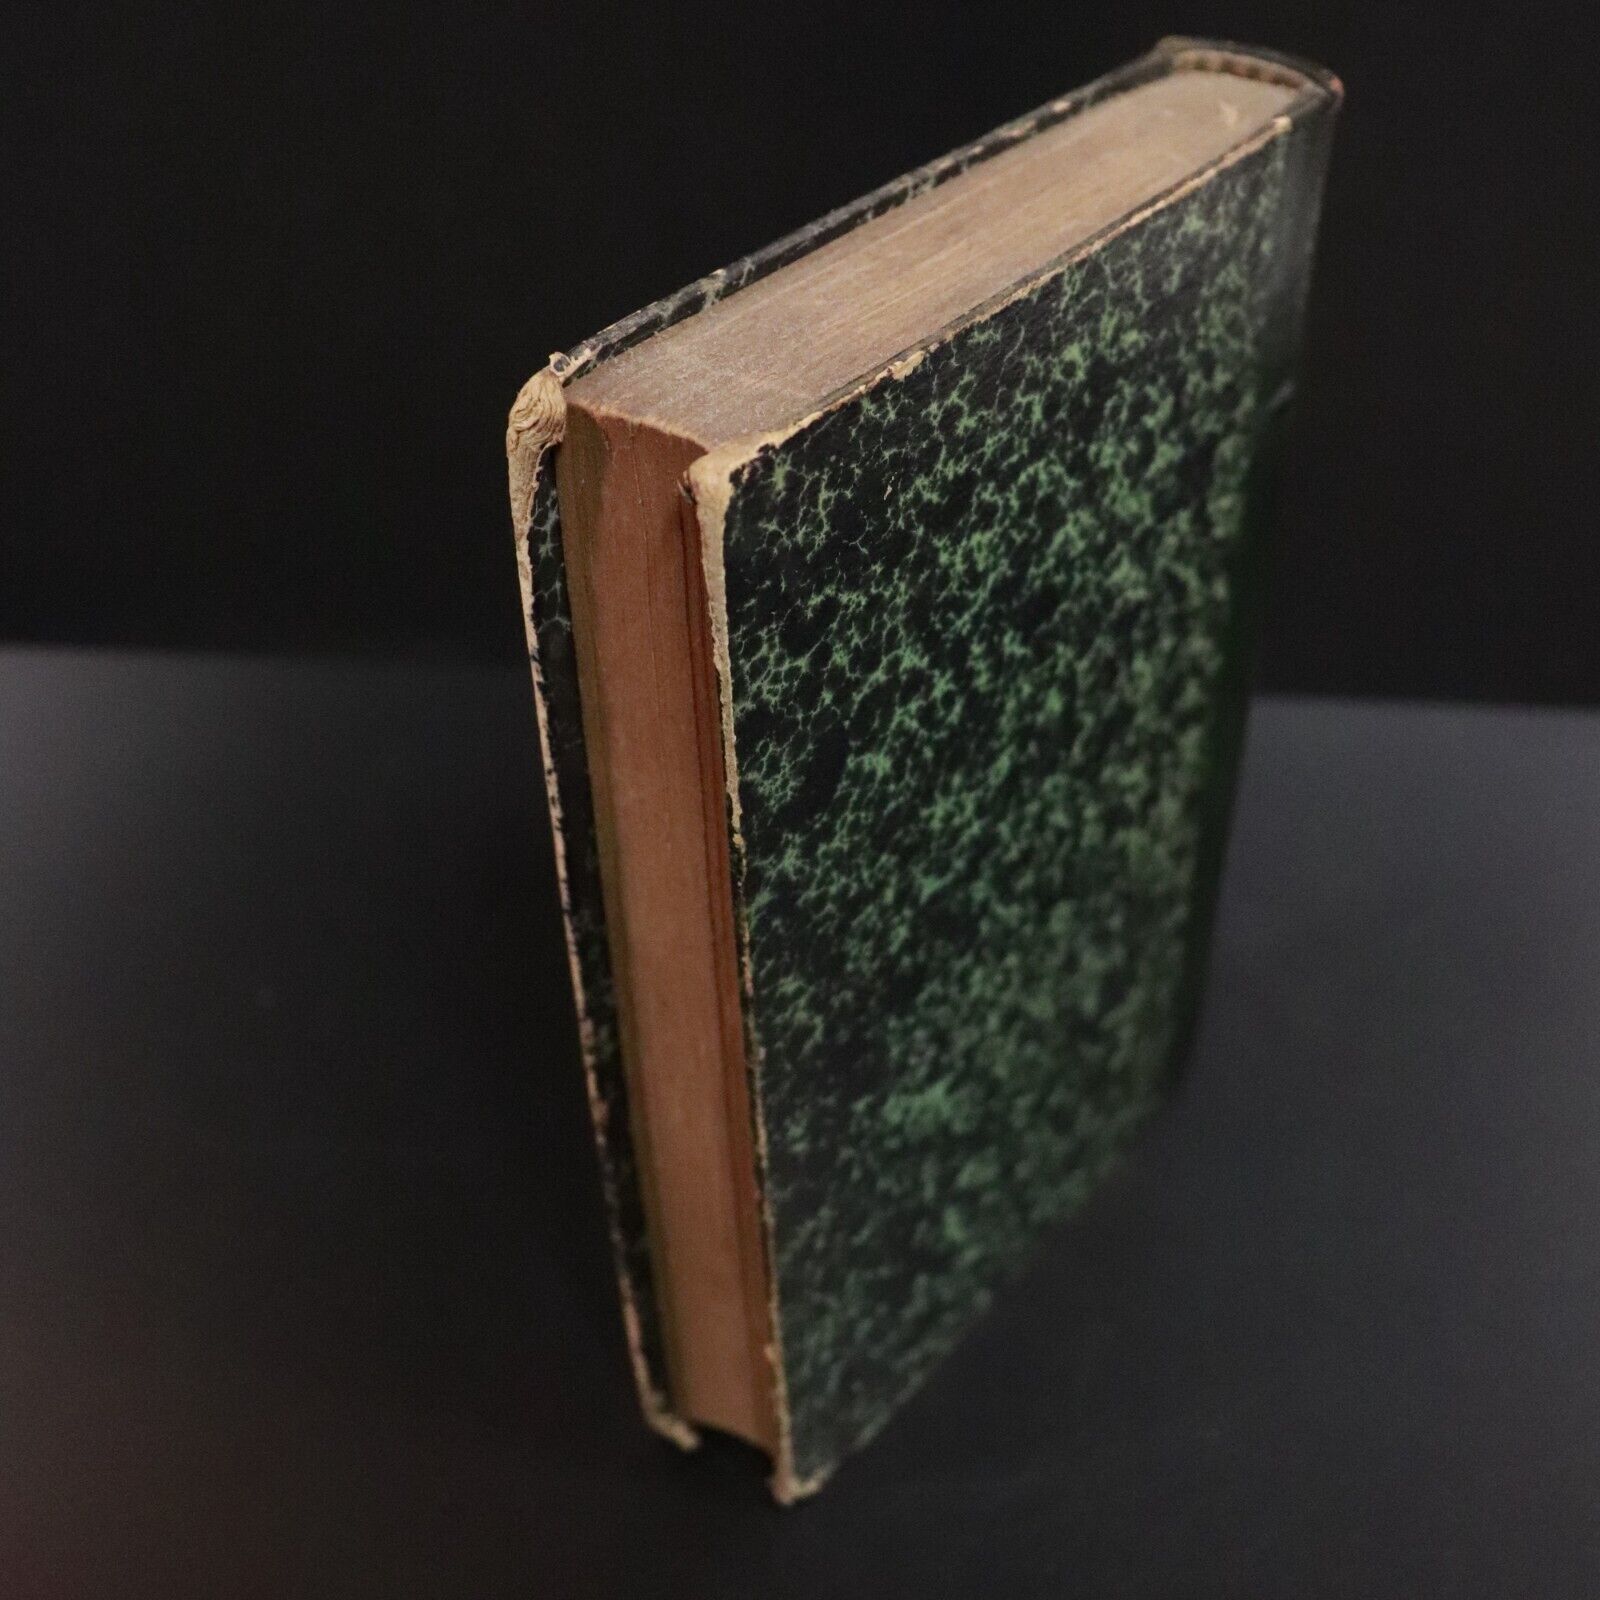 1923 Le Petit Chose by Alphonse Daudet Antiquarian French Fiction Book